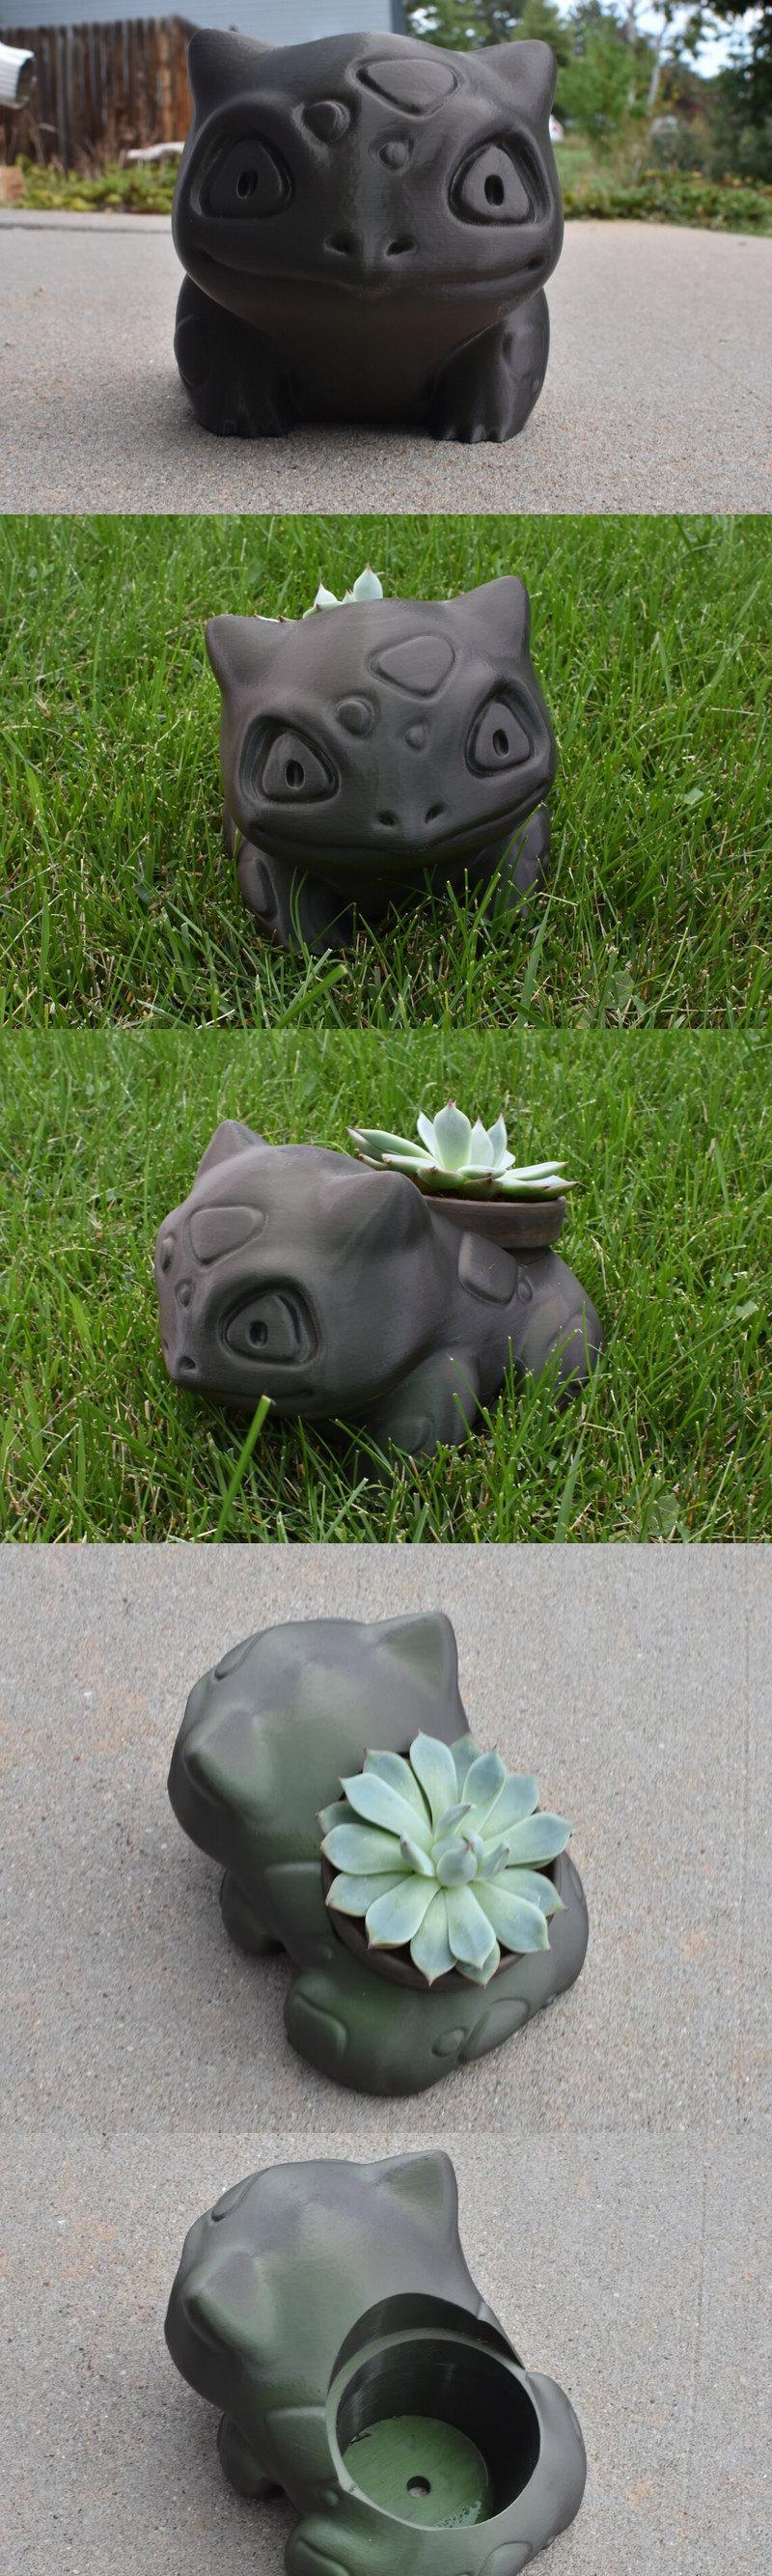 妙蛙种子花盆3D打印模型